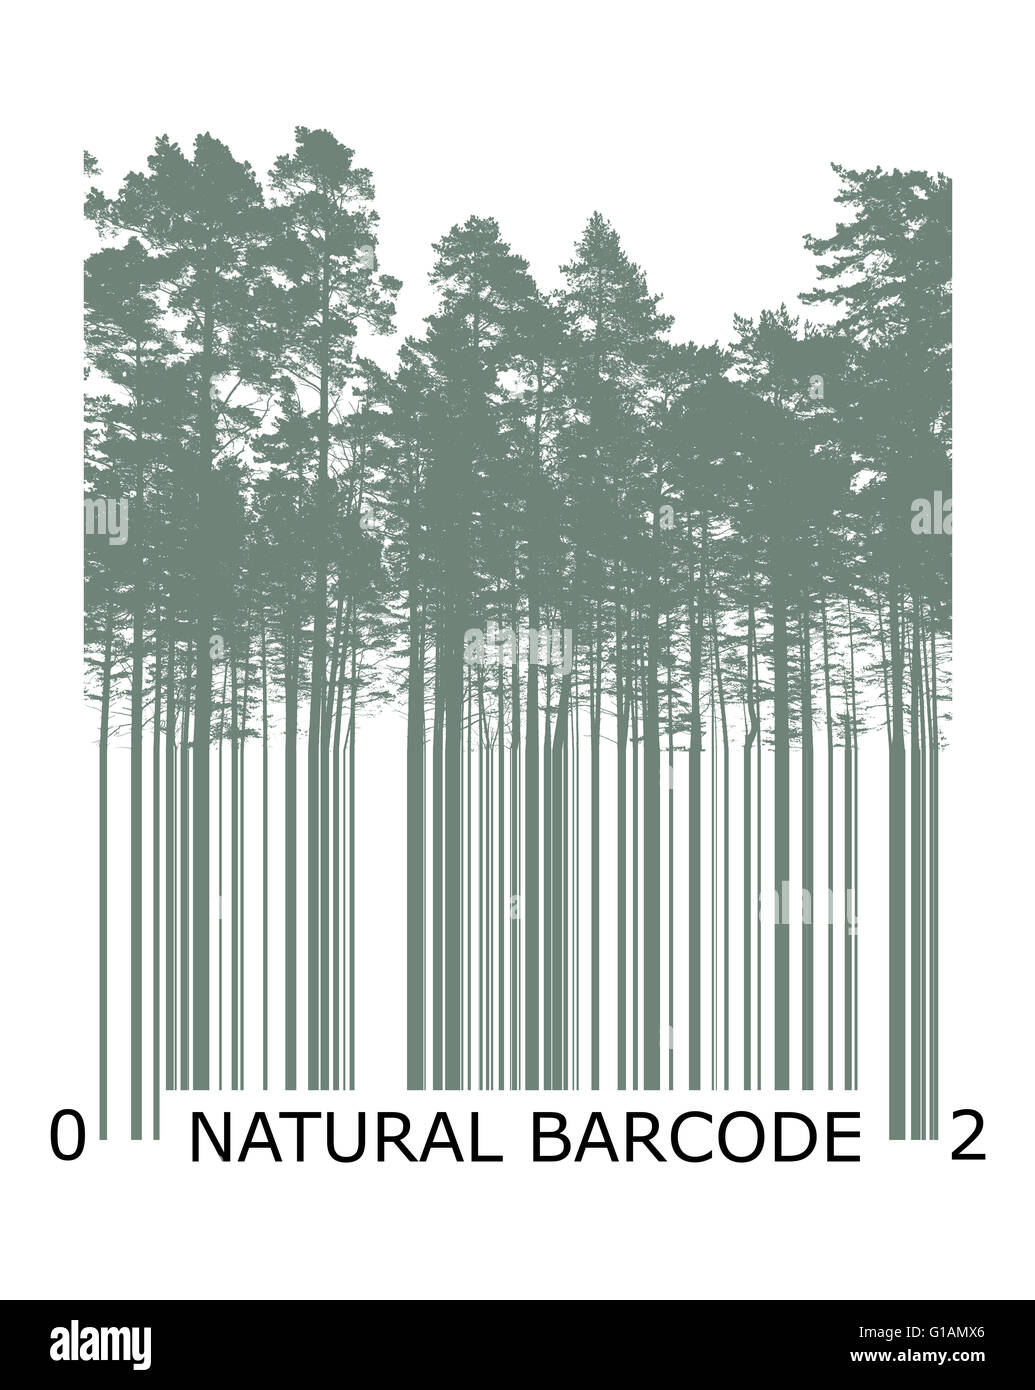 Code barre de produit naturel concept avec silhouettes d'arbres Banque D'Images